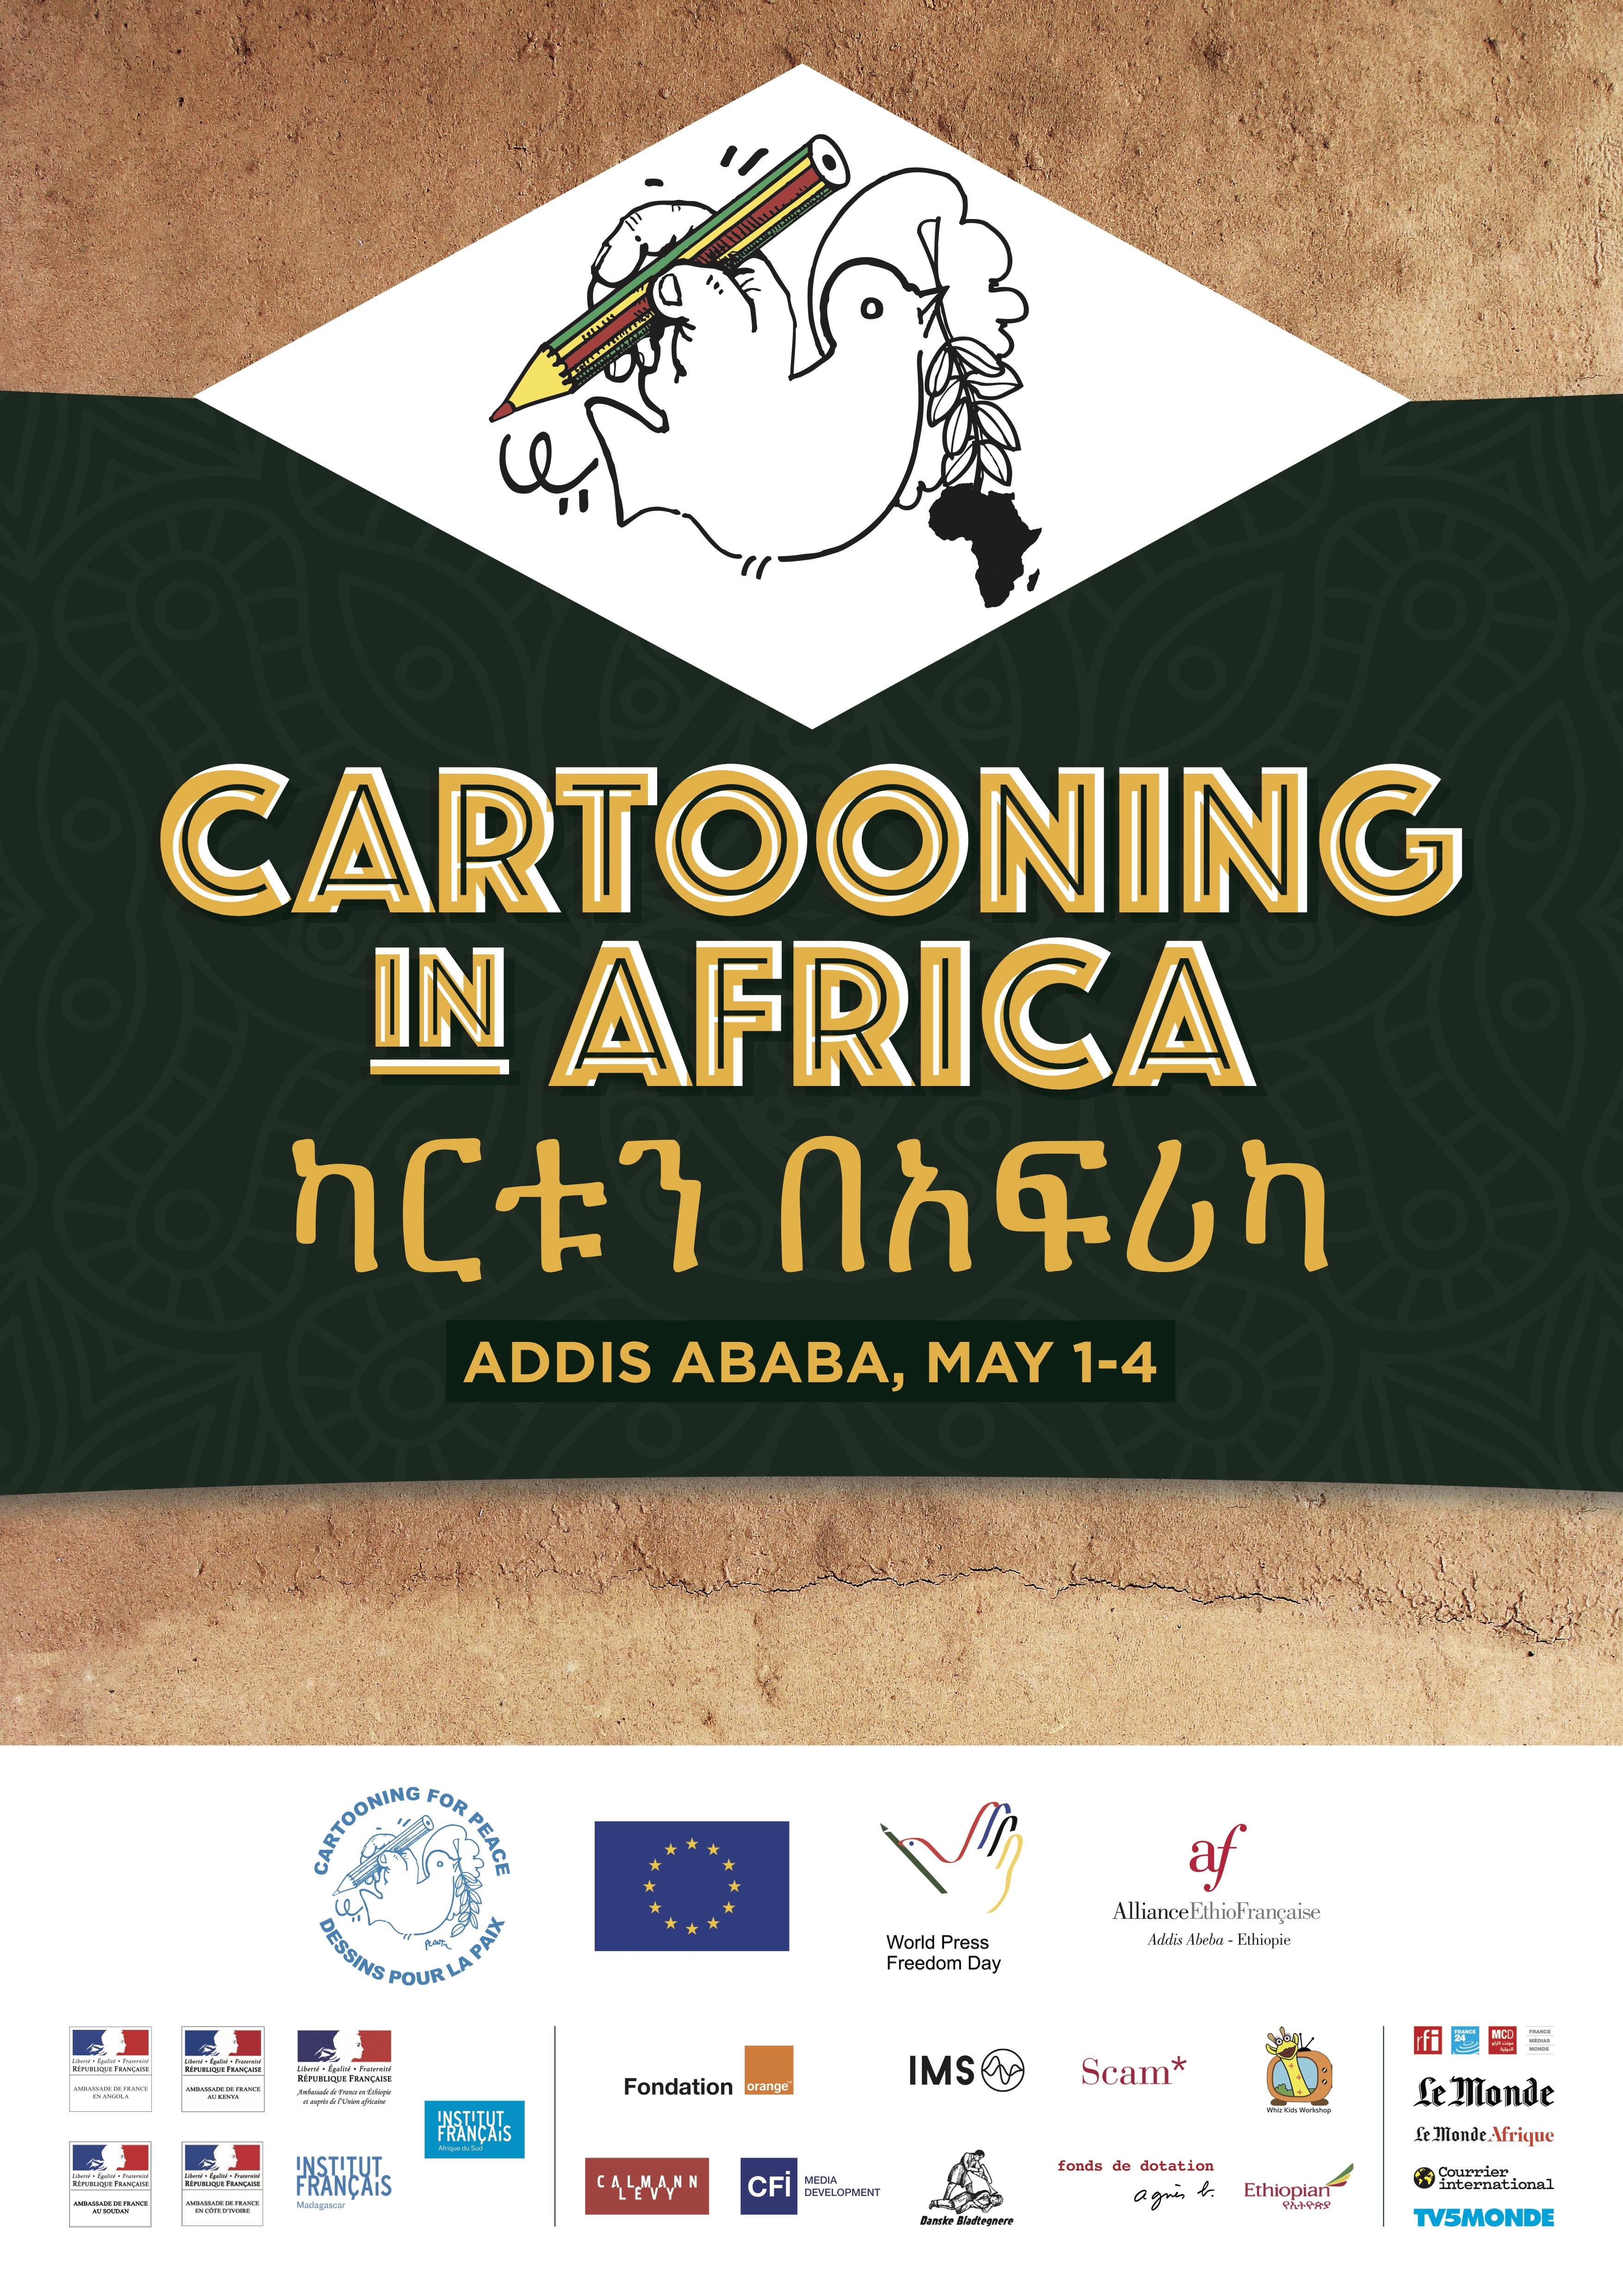 Cartooning in Africa! - Cartooning for Peace